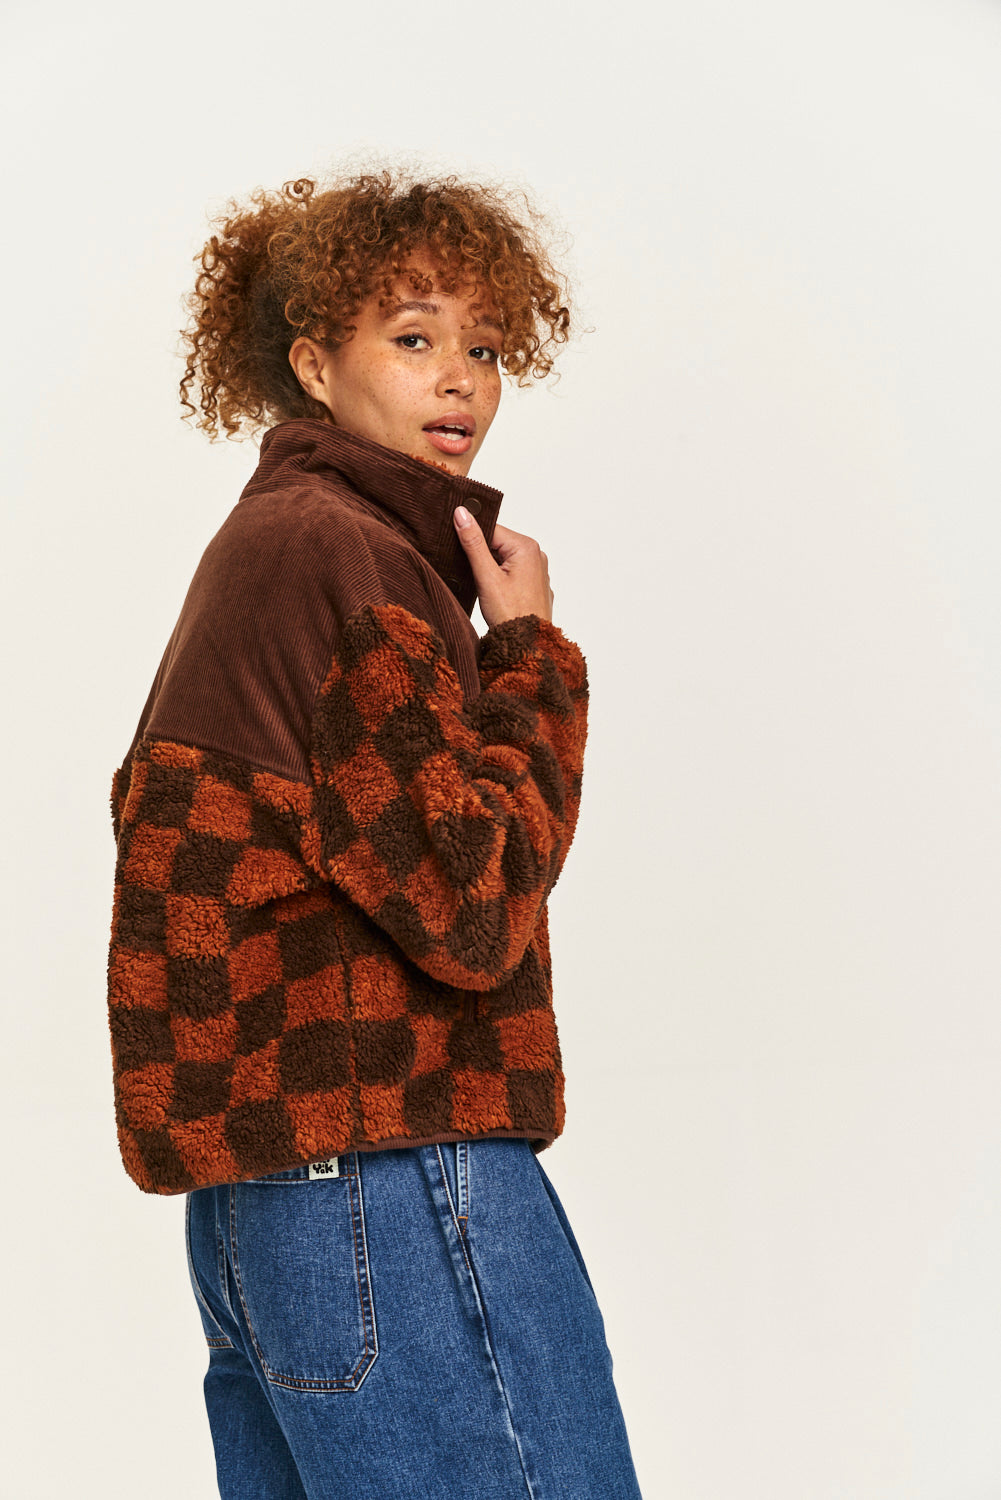 Sweater Fleece Jacket – Unboxx Demo Store